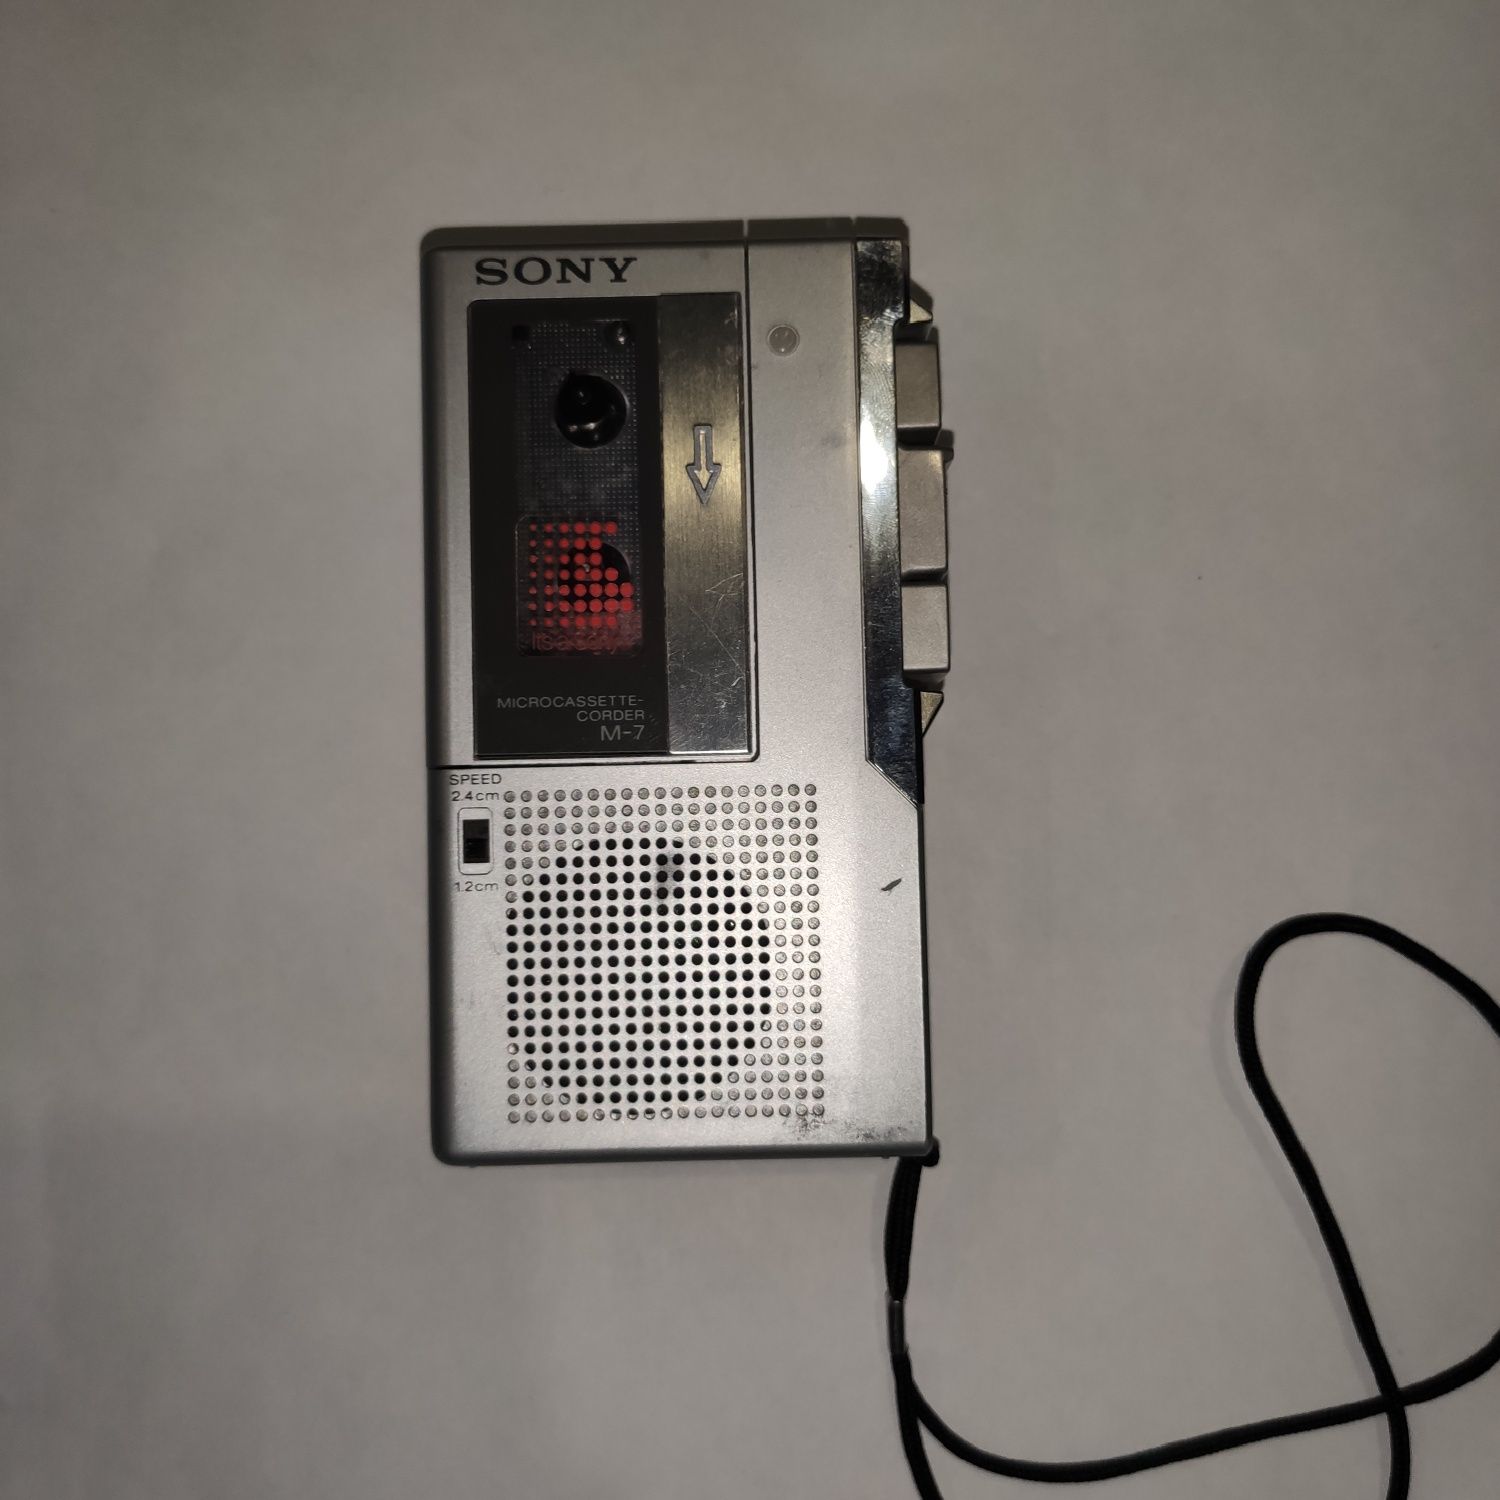 Mirco gravador da Sony